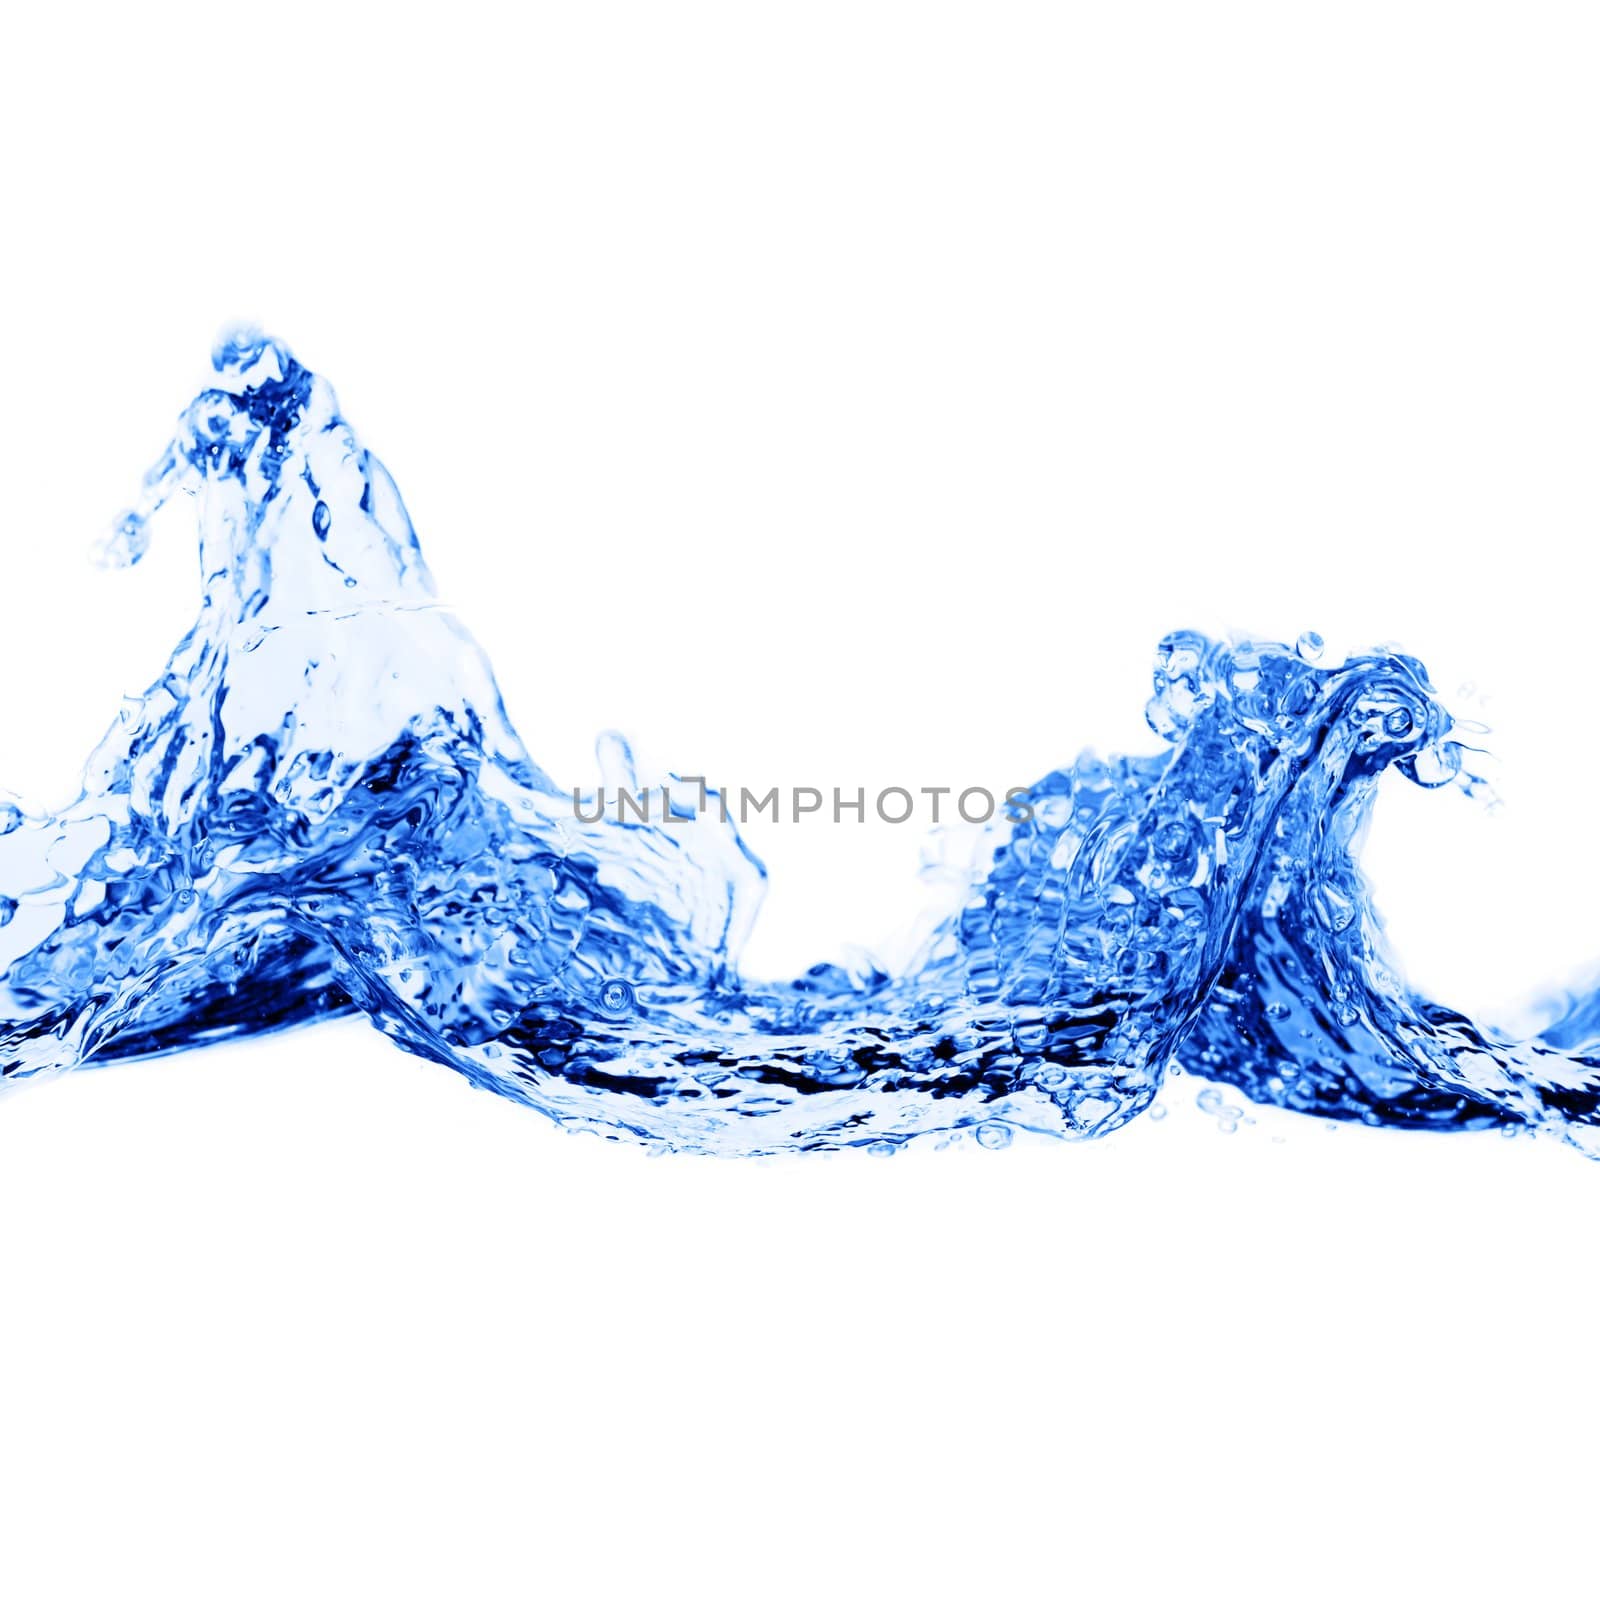 Blue Wave by cardmaverick